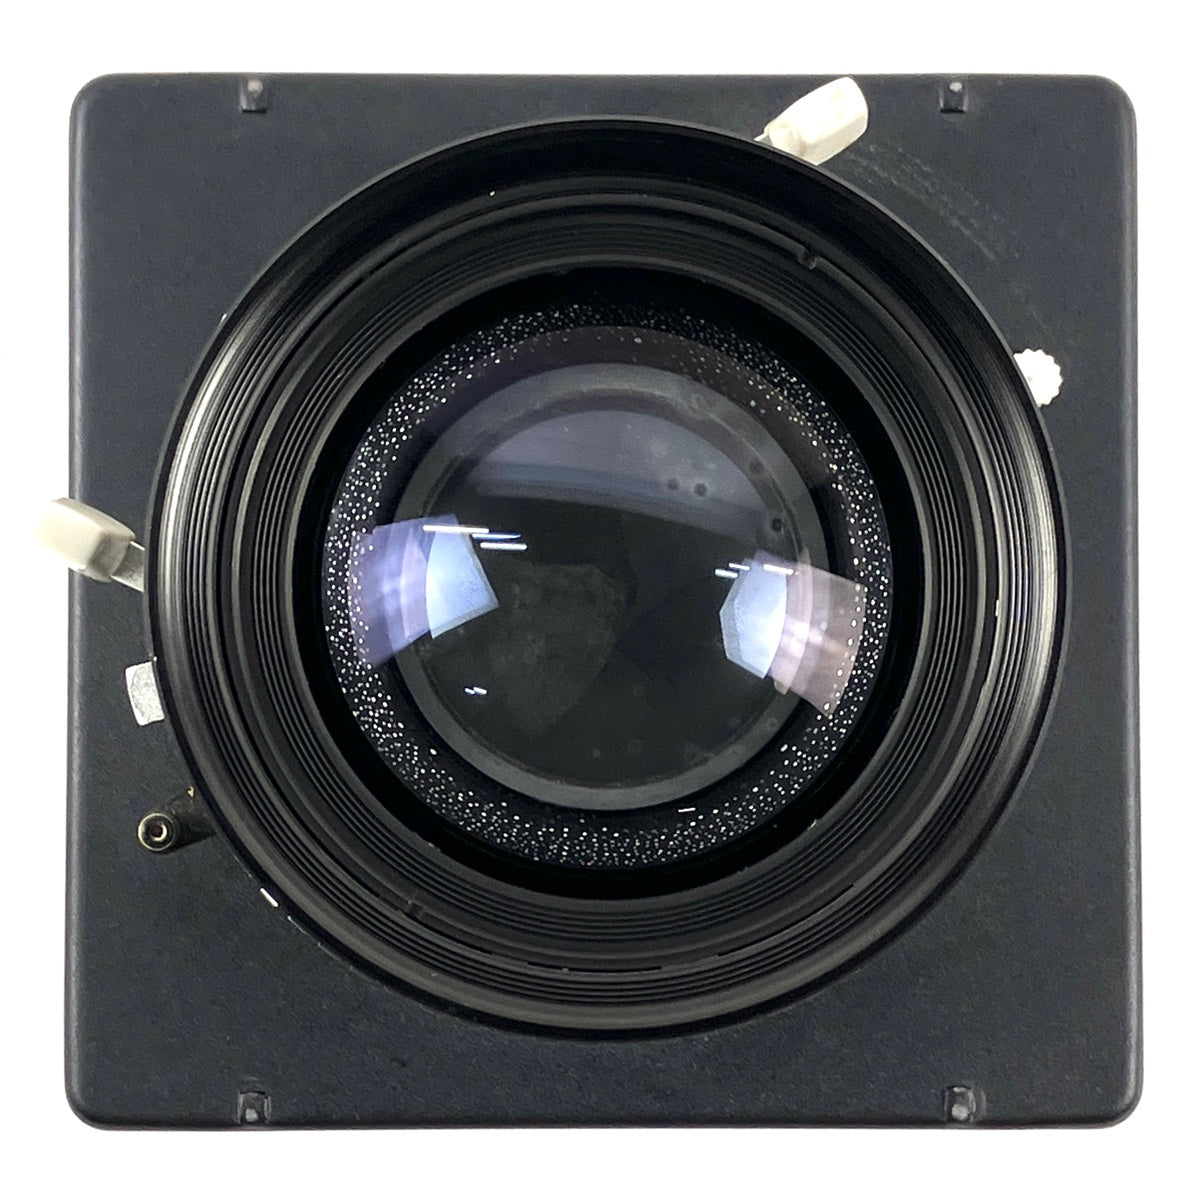 バイセル公式】シュナイダー Schneider Symmar-S 180mm F5.6 大判カメラ用レンズ 【中古】 - バイセルブランシェ